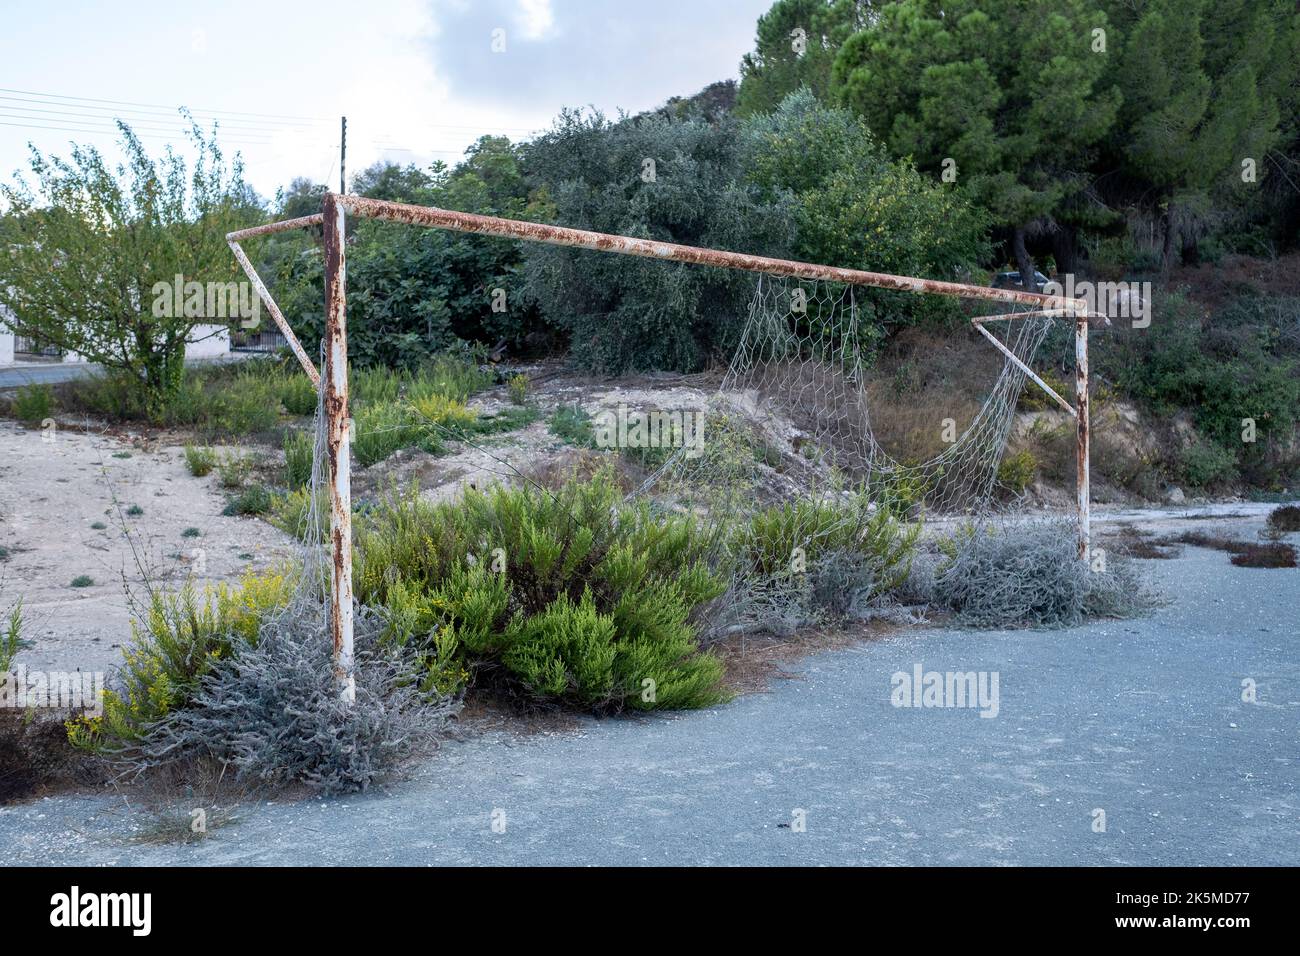 Overgrown football goalposts, Pano Theletra Village, Cyprus. Stock Photo